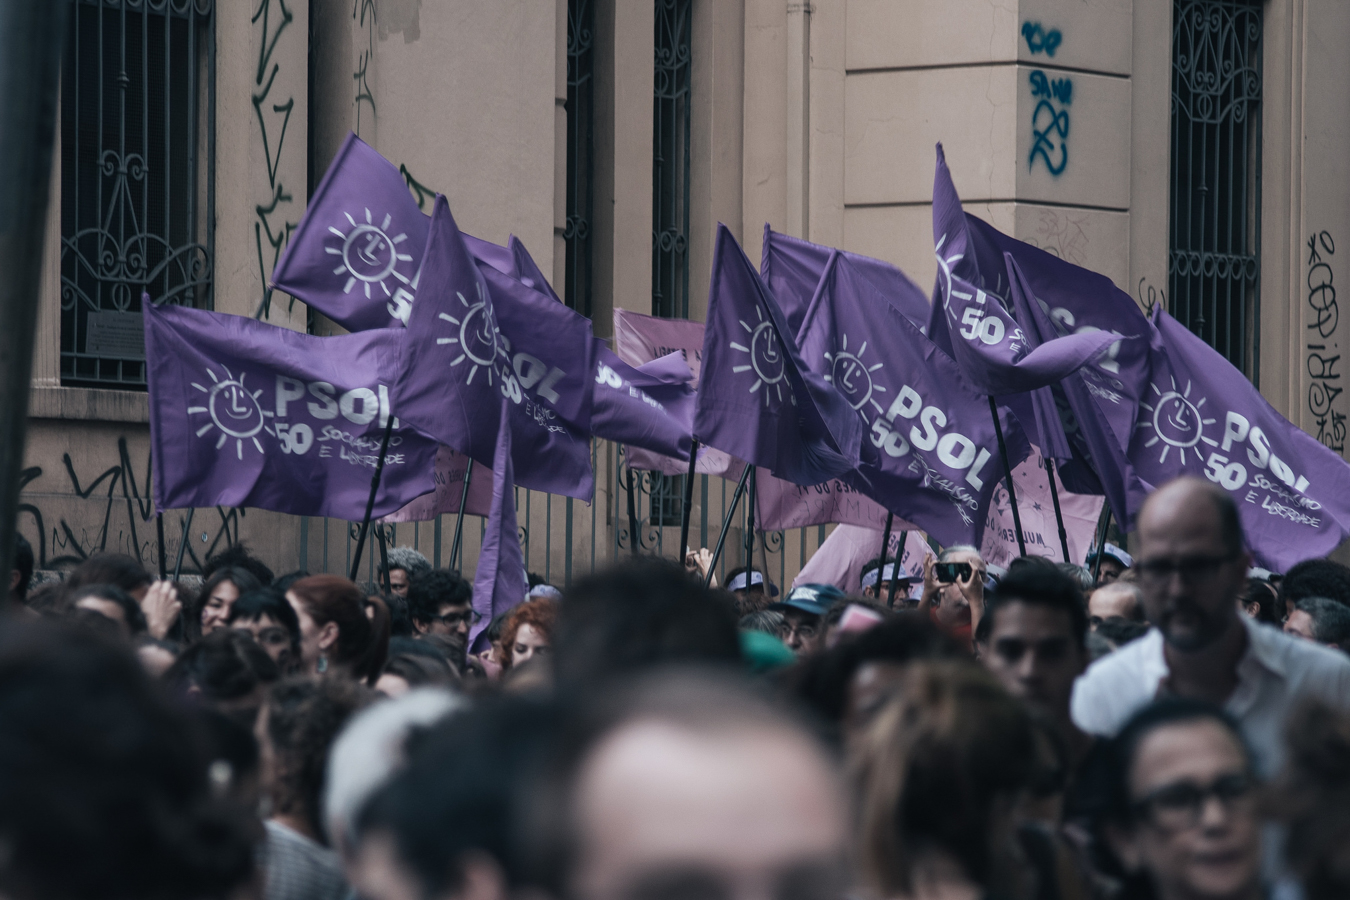 O PSOL deveria debater um programa para 2018